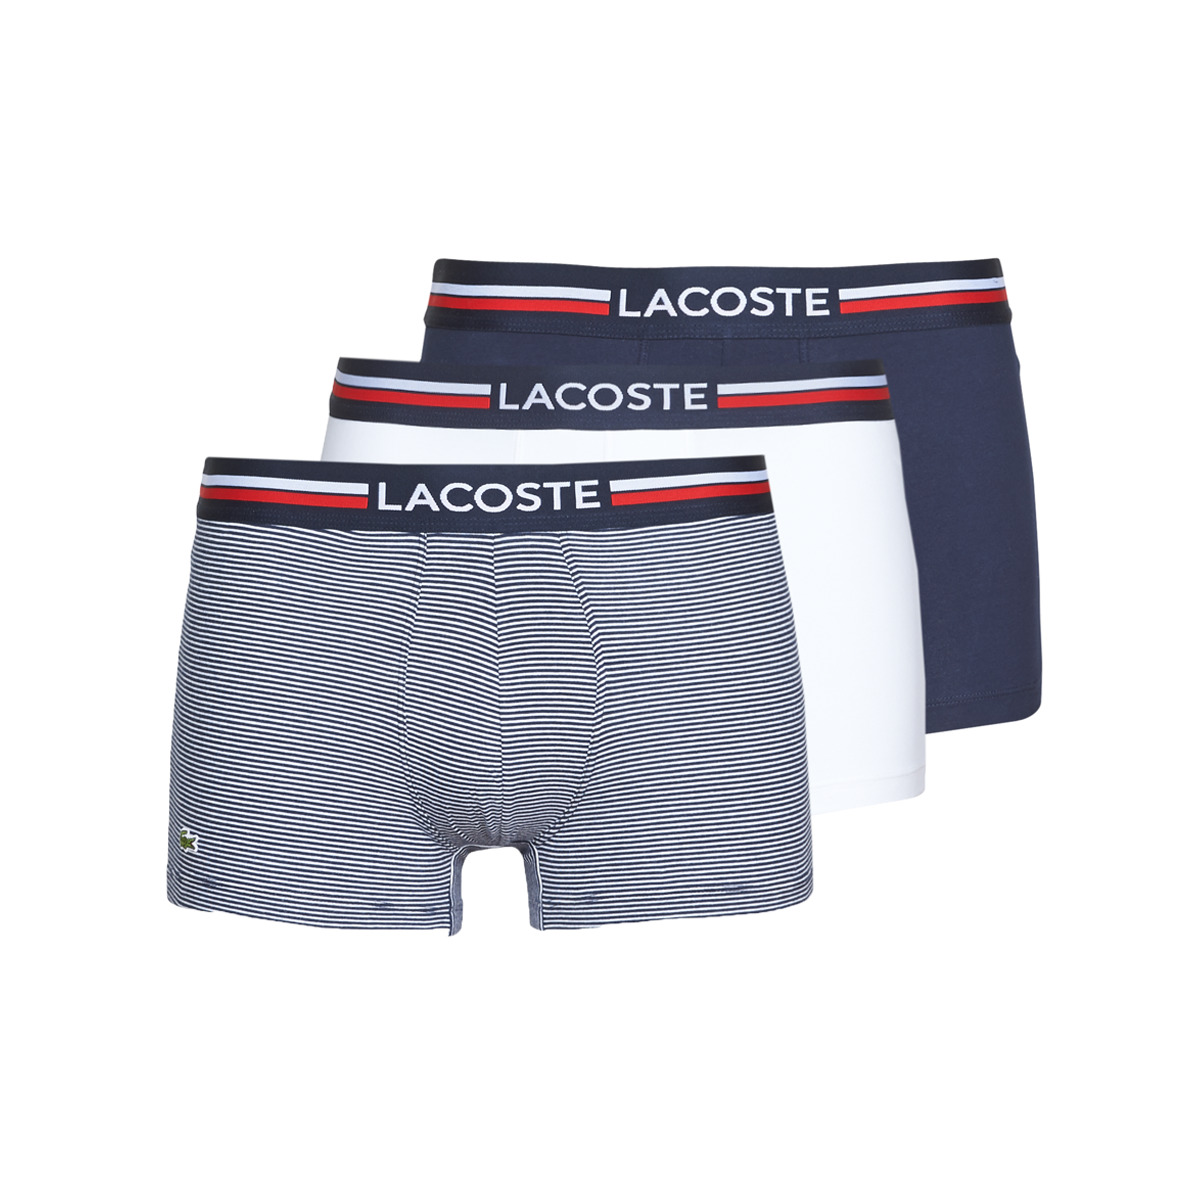 lacoste  5h3413-525  men's boxer shorts in blue